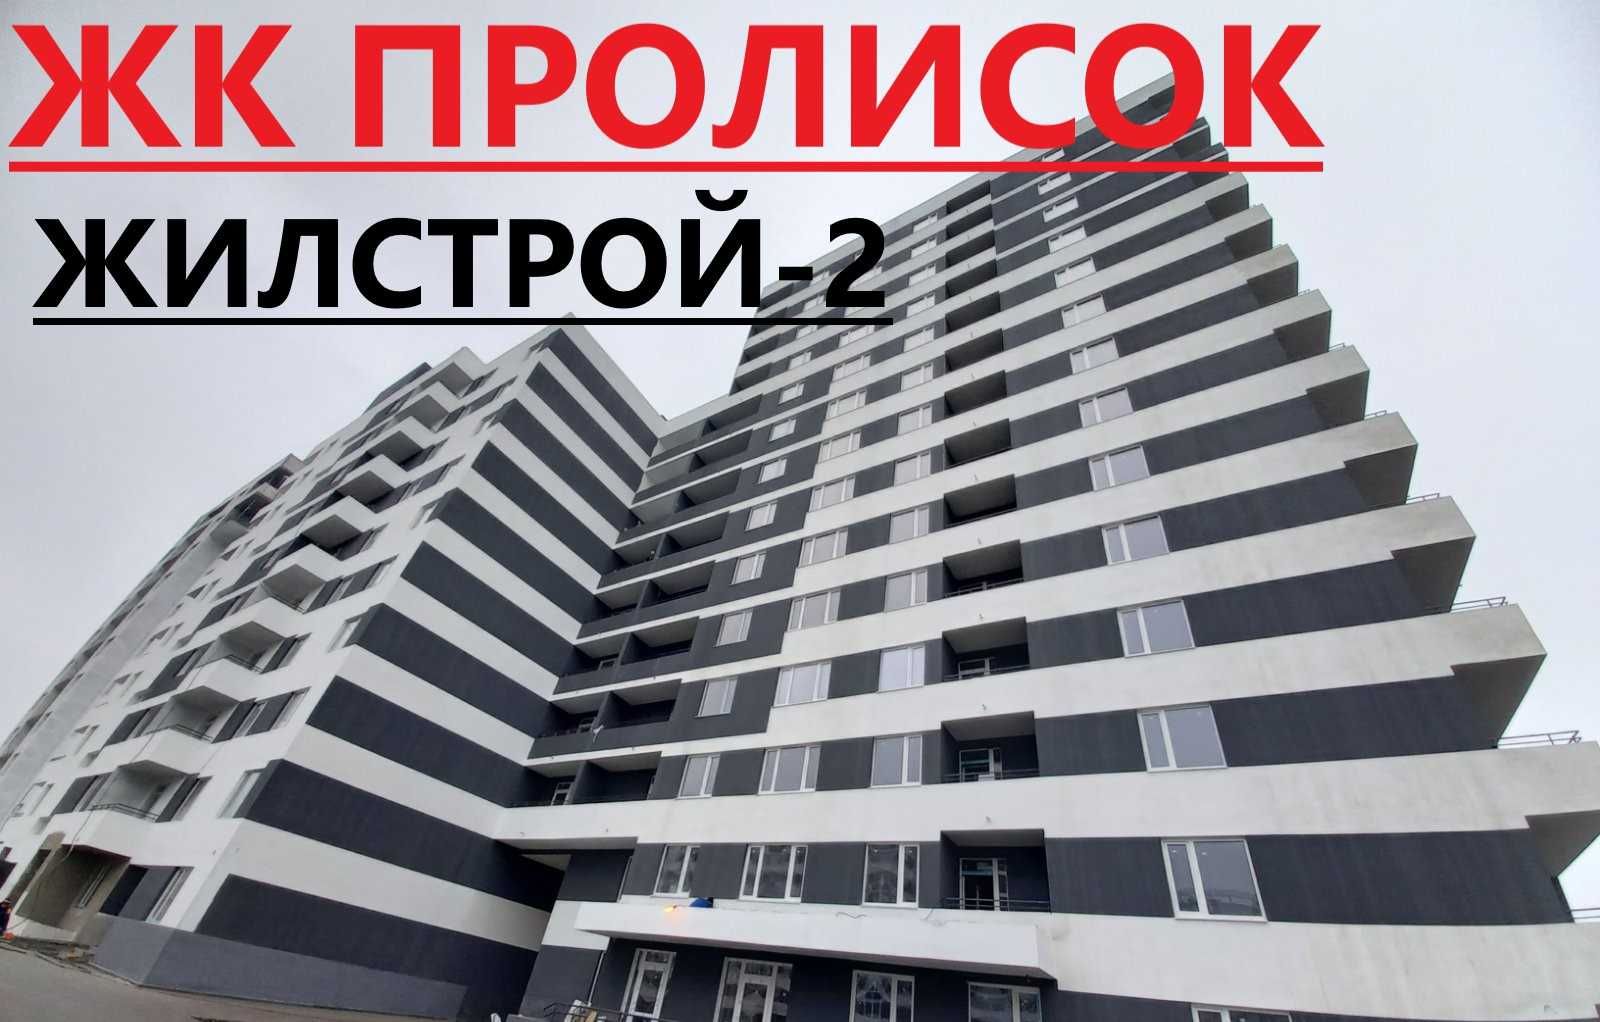 ЖК Пролисок Продам по ЛУЧШЕЙ ЦЕНЕ 2к квартиру с РЕМОНТОМ  83 тыс.$  ww